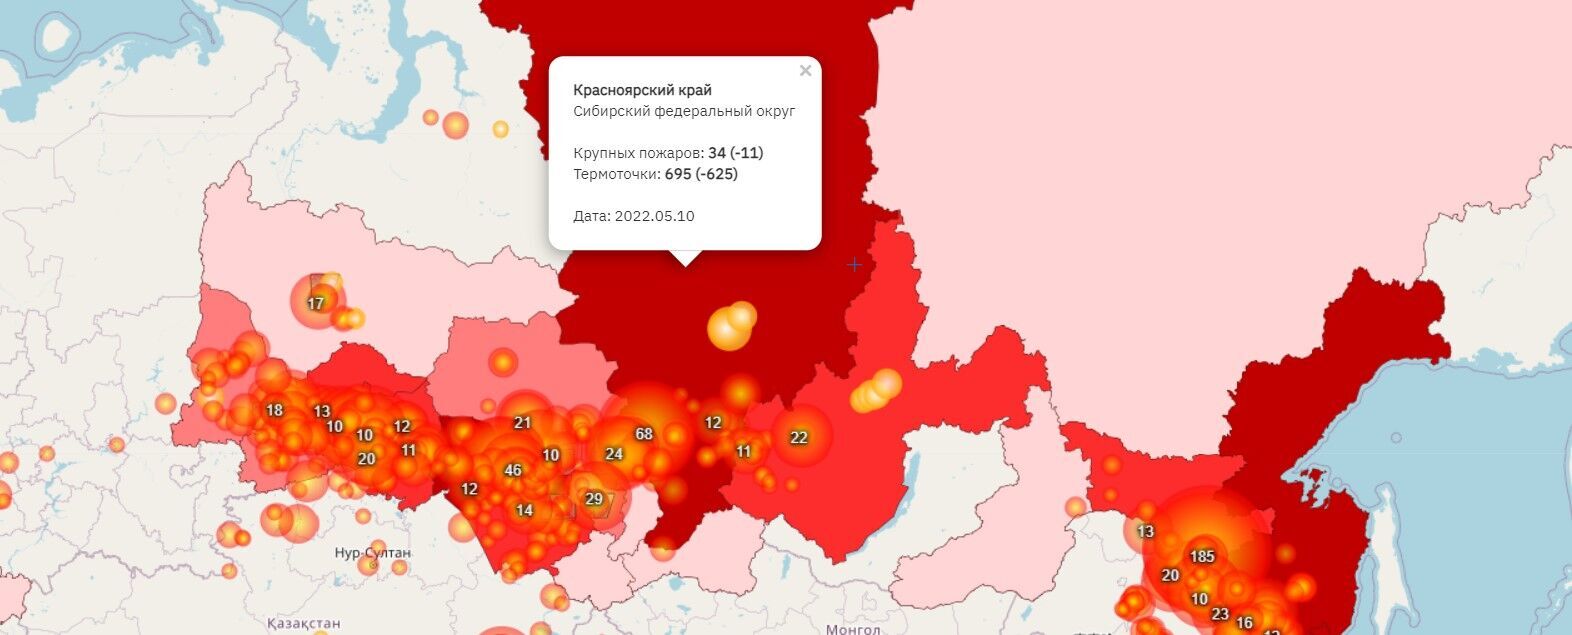 карта пожаров в Сибири в 2022 году